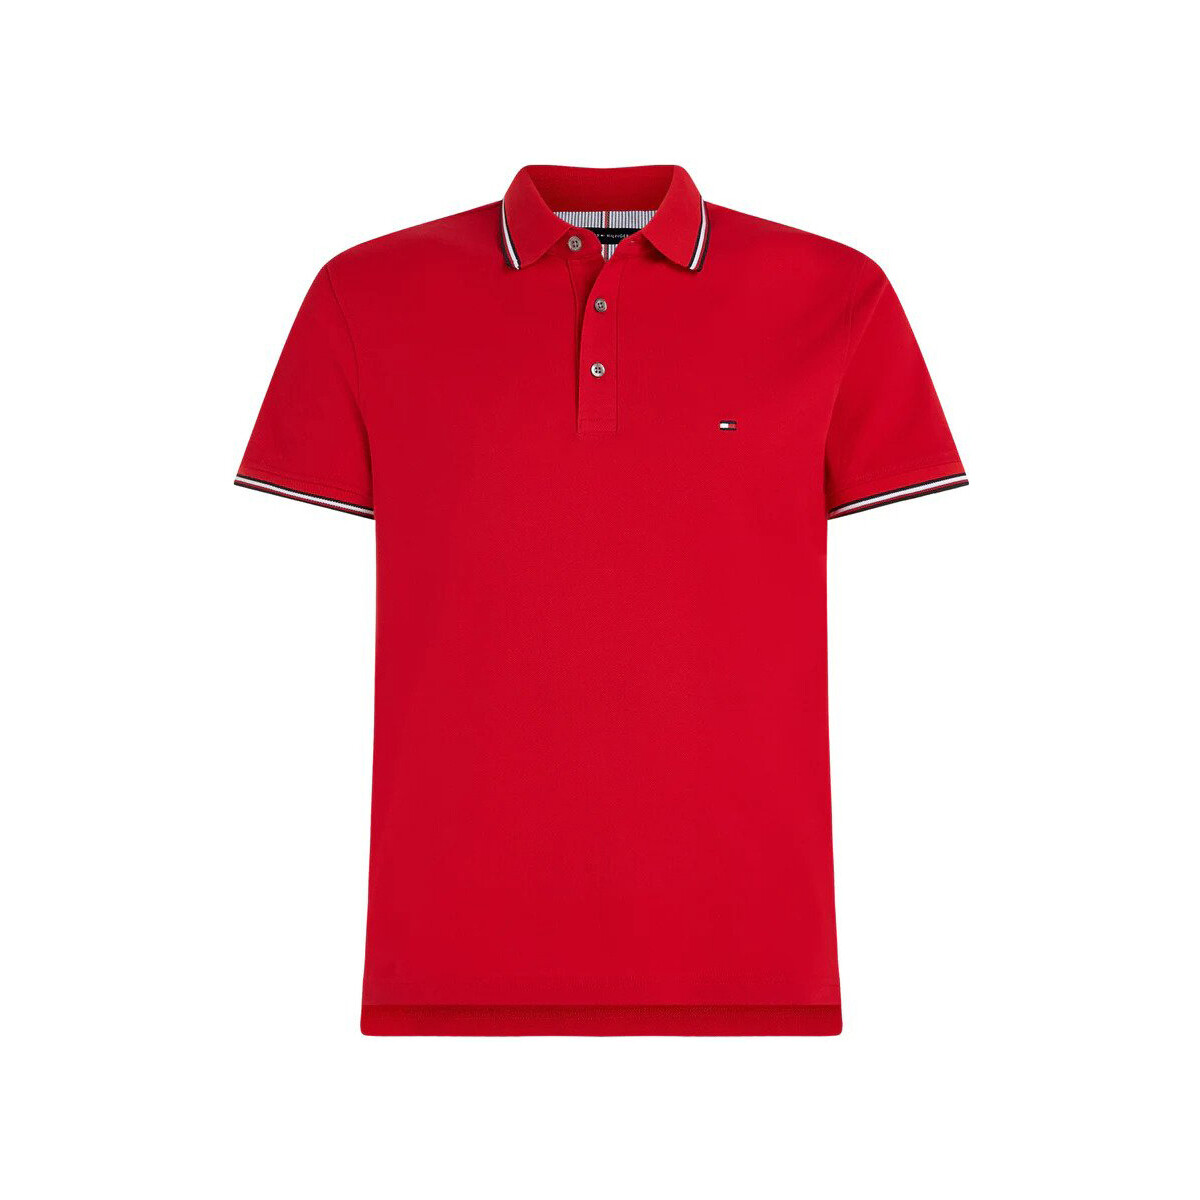 tekstylia Męskie Koszulki polo z krótkim rękawem Tommy Hilfiger Rwb Tipped Slim Polo Czerwony